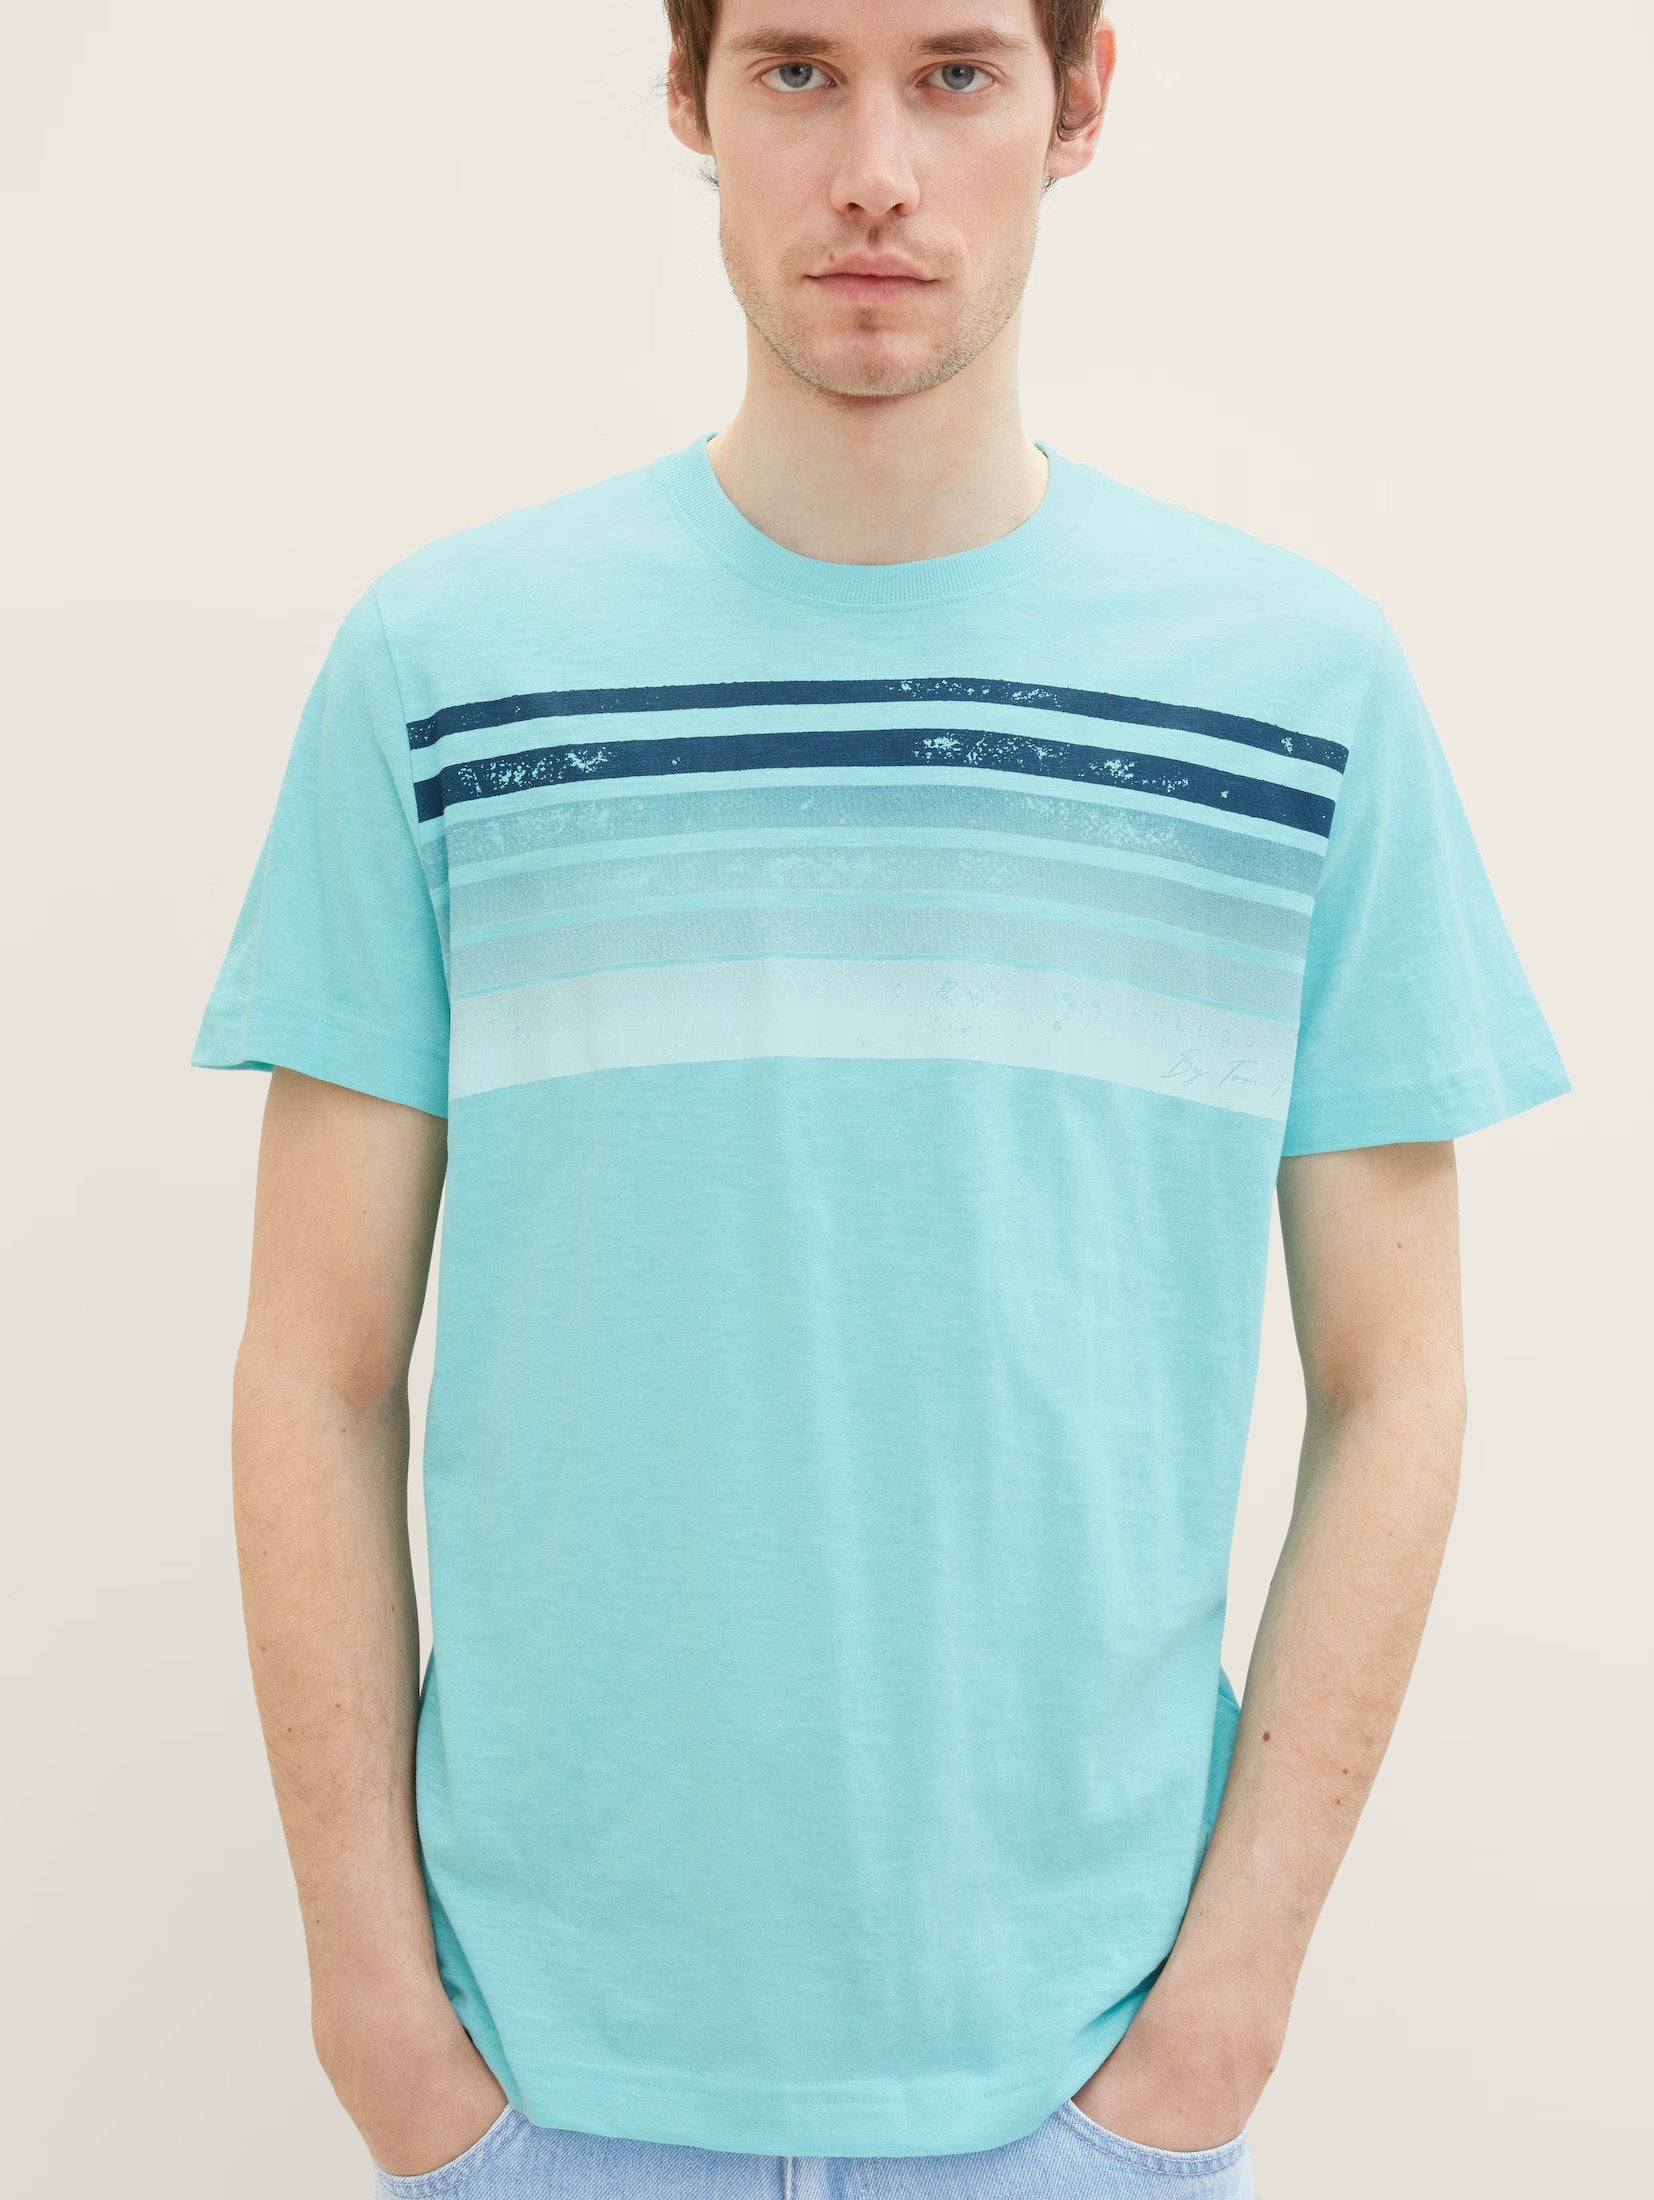 Tom Tailor Aqua Blue Designed Summer T-shirt